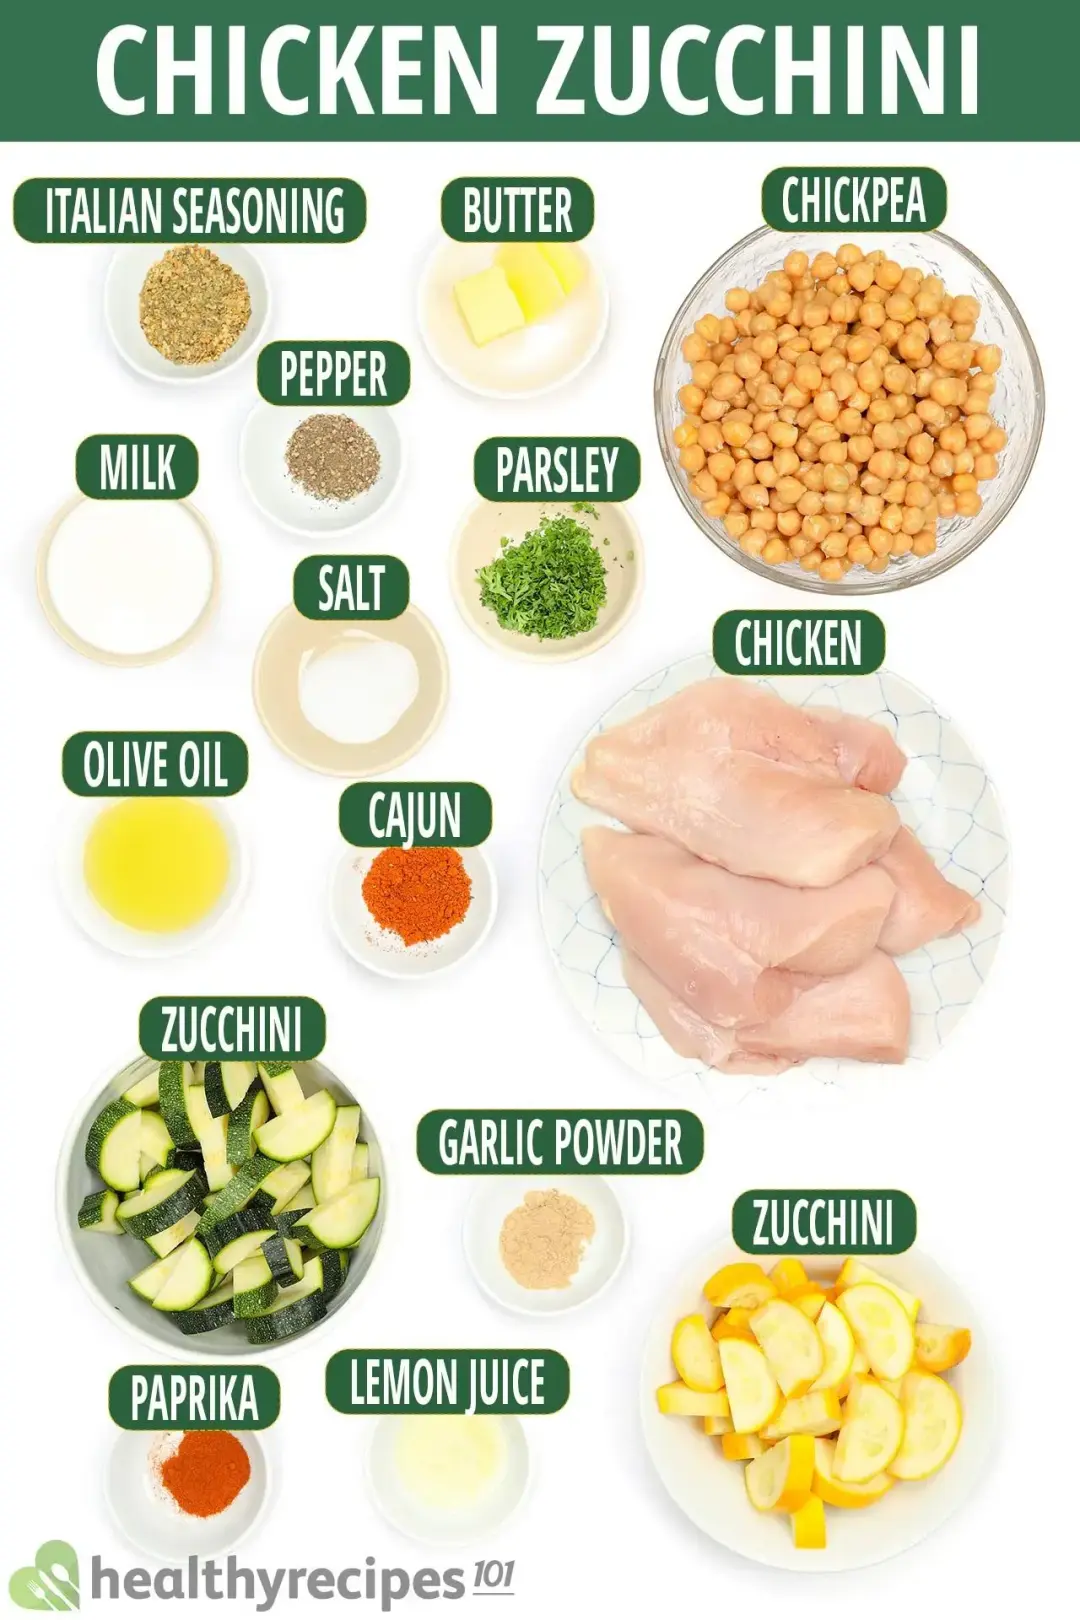 Ingredients for Chicken Zucchini